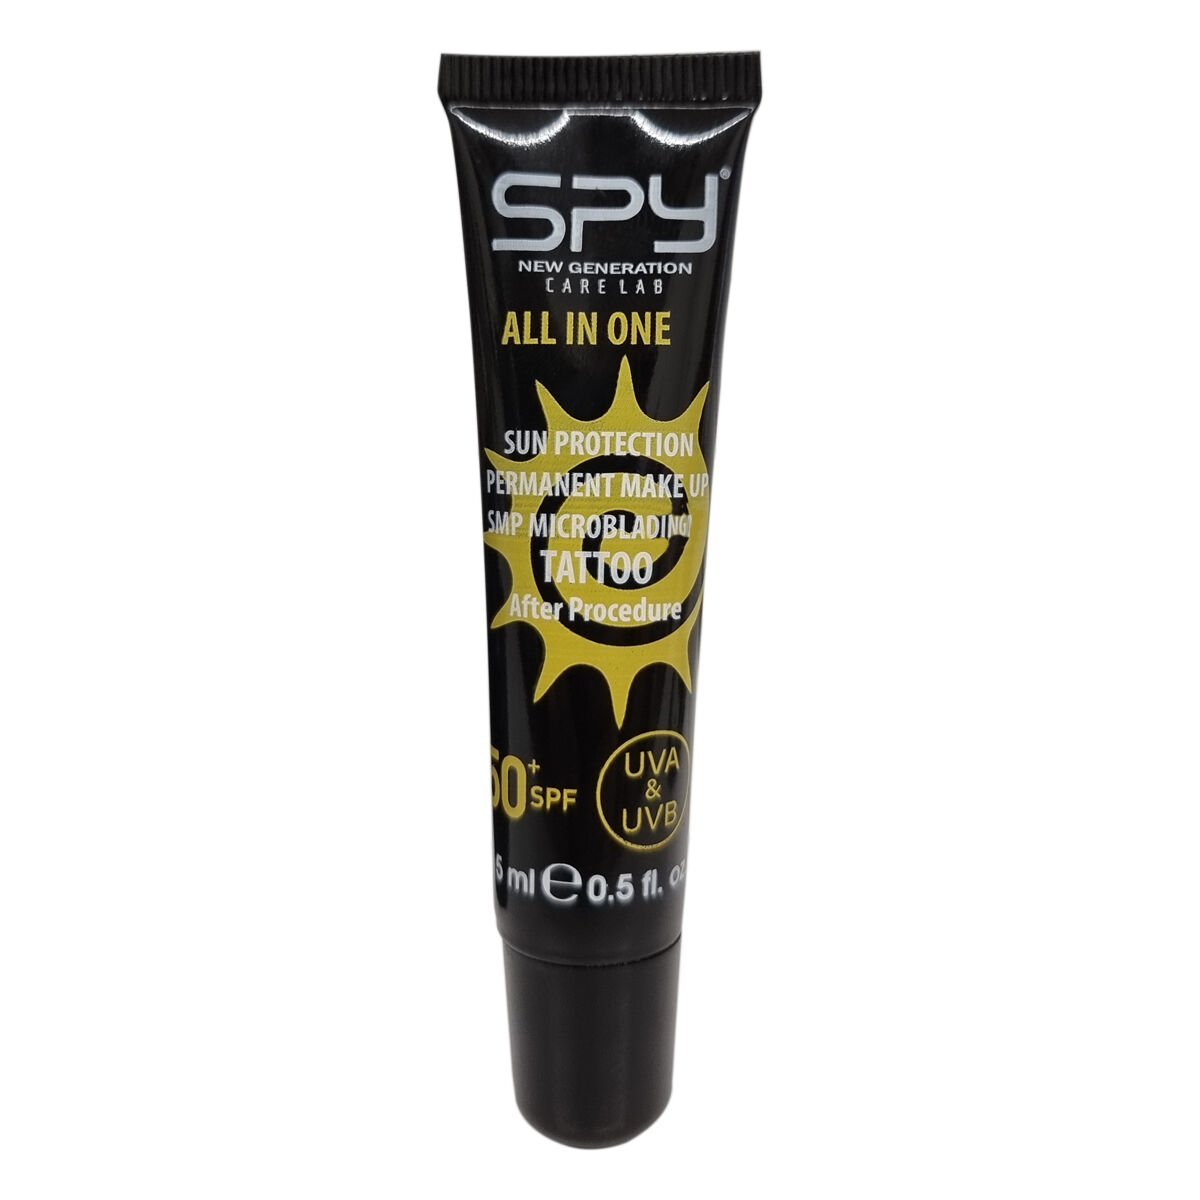 SPY Care Lab Sun Block Protection 50+ SPF After Care Güneş Koruyucu Dövme ve Cilt Bakım Kremi 15ml